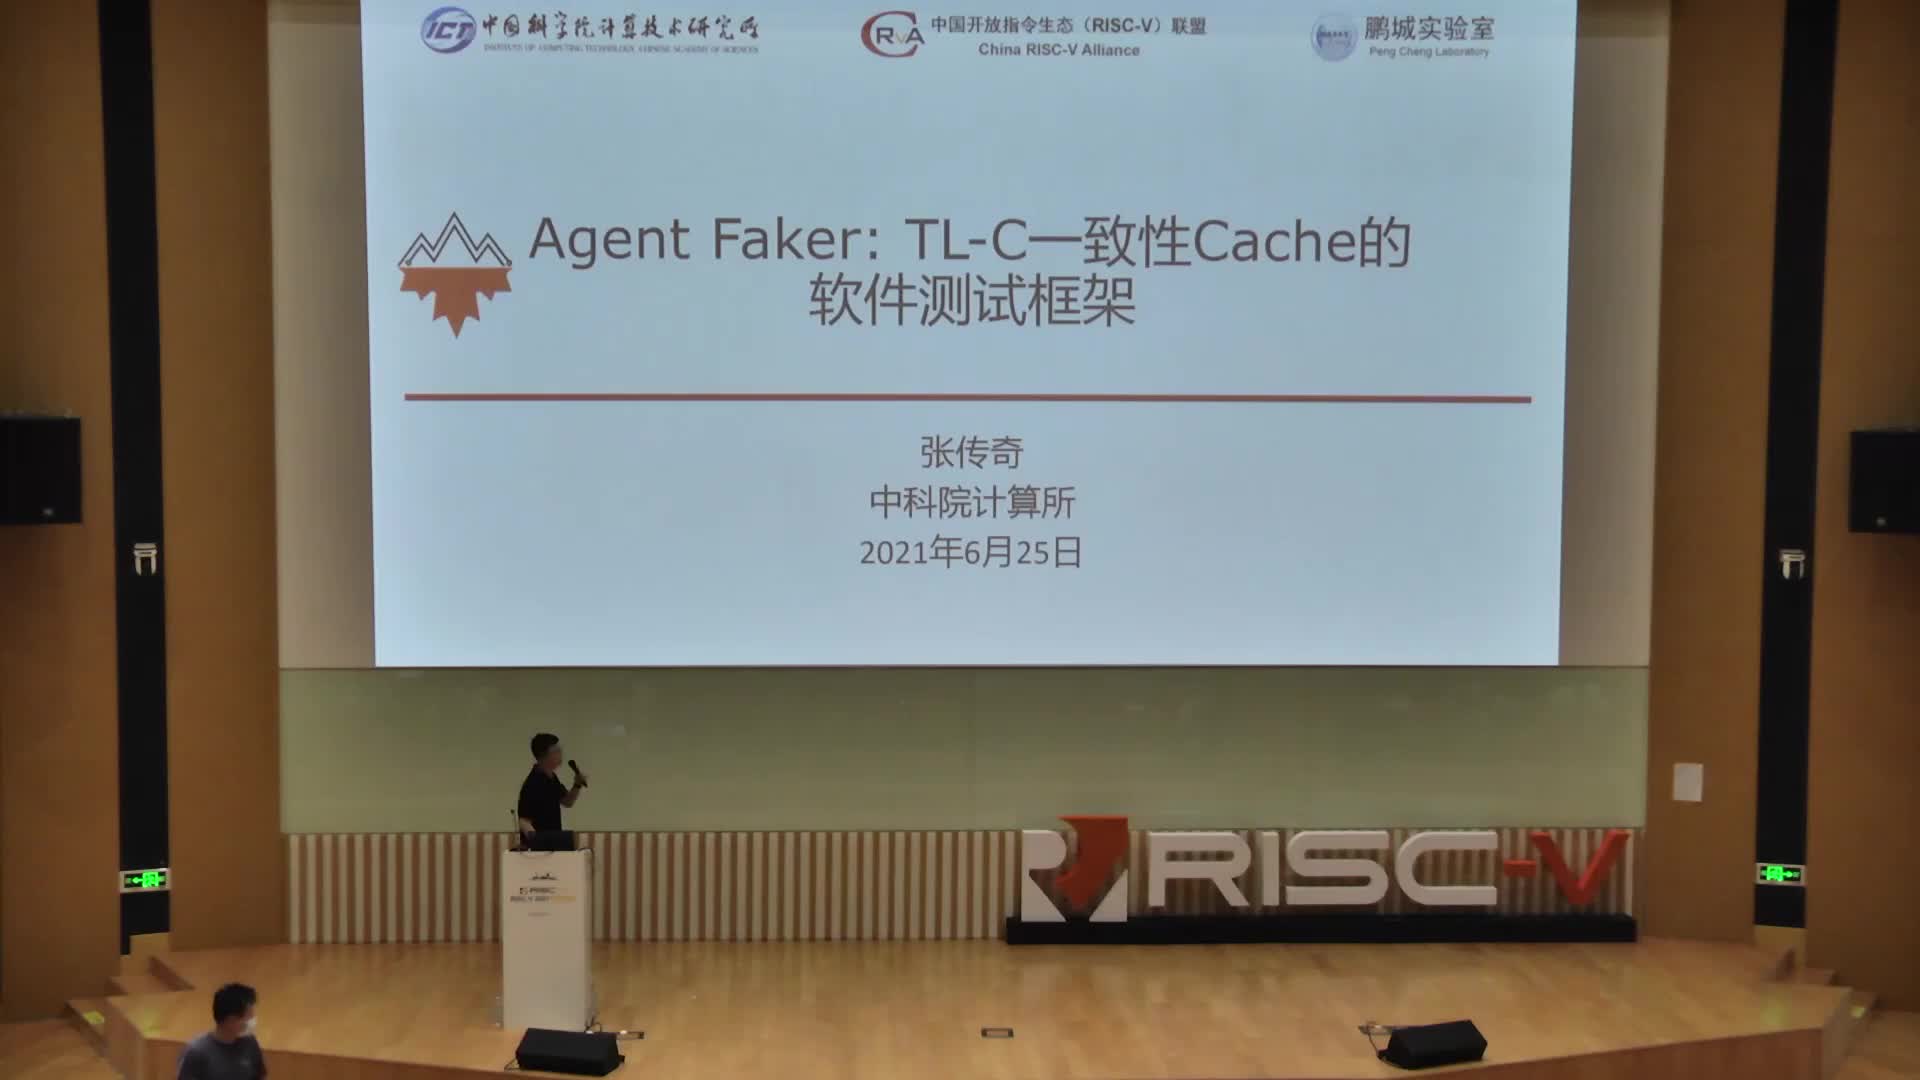 张传奇 - Agent Faker TL-C一致性Cache的软件测试框架 - 第一届 RISC-V 中国峰会